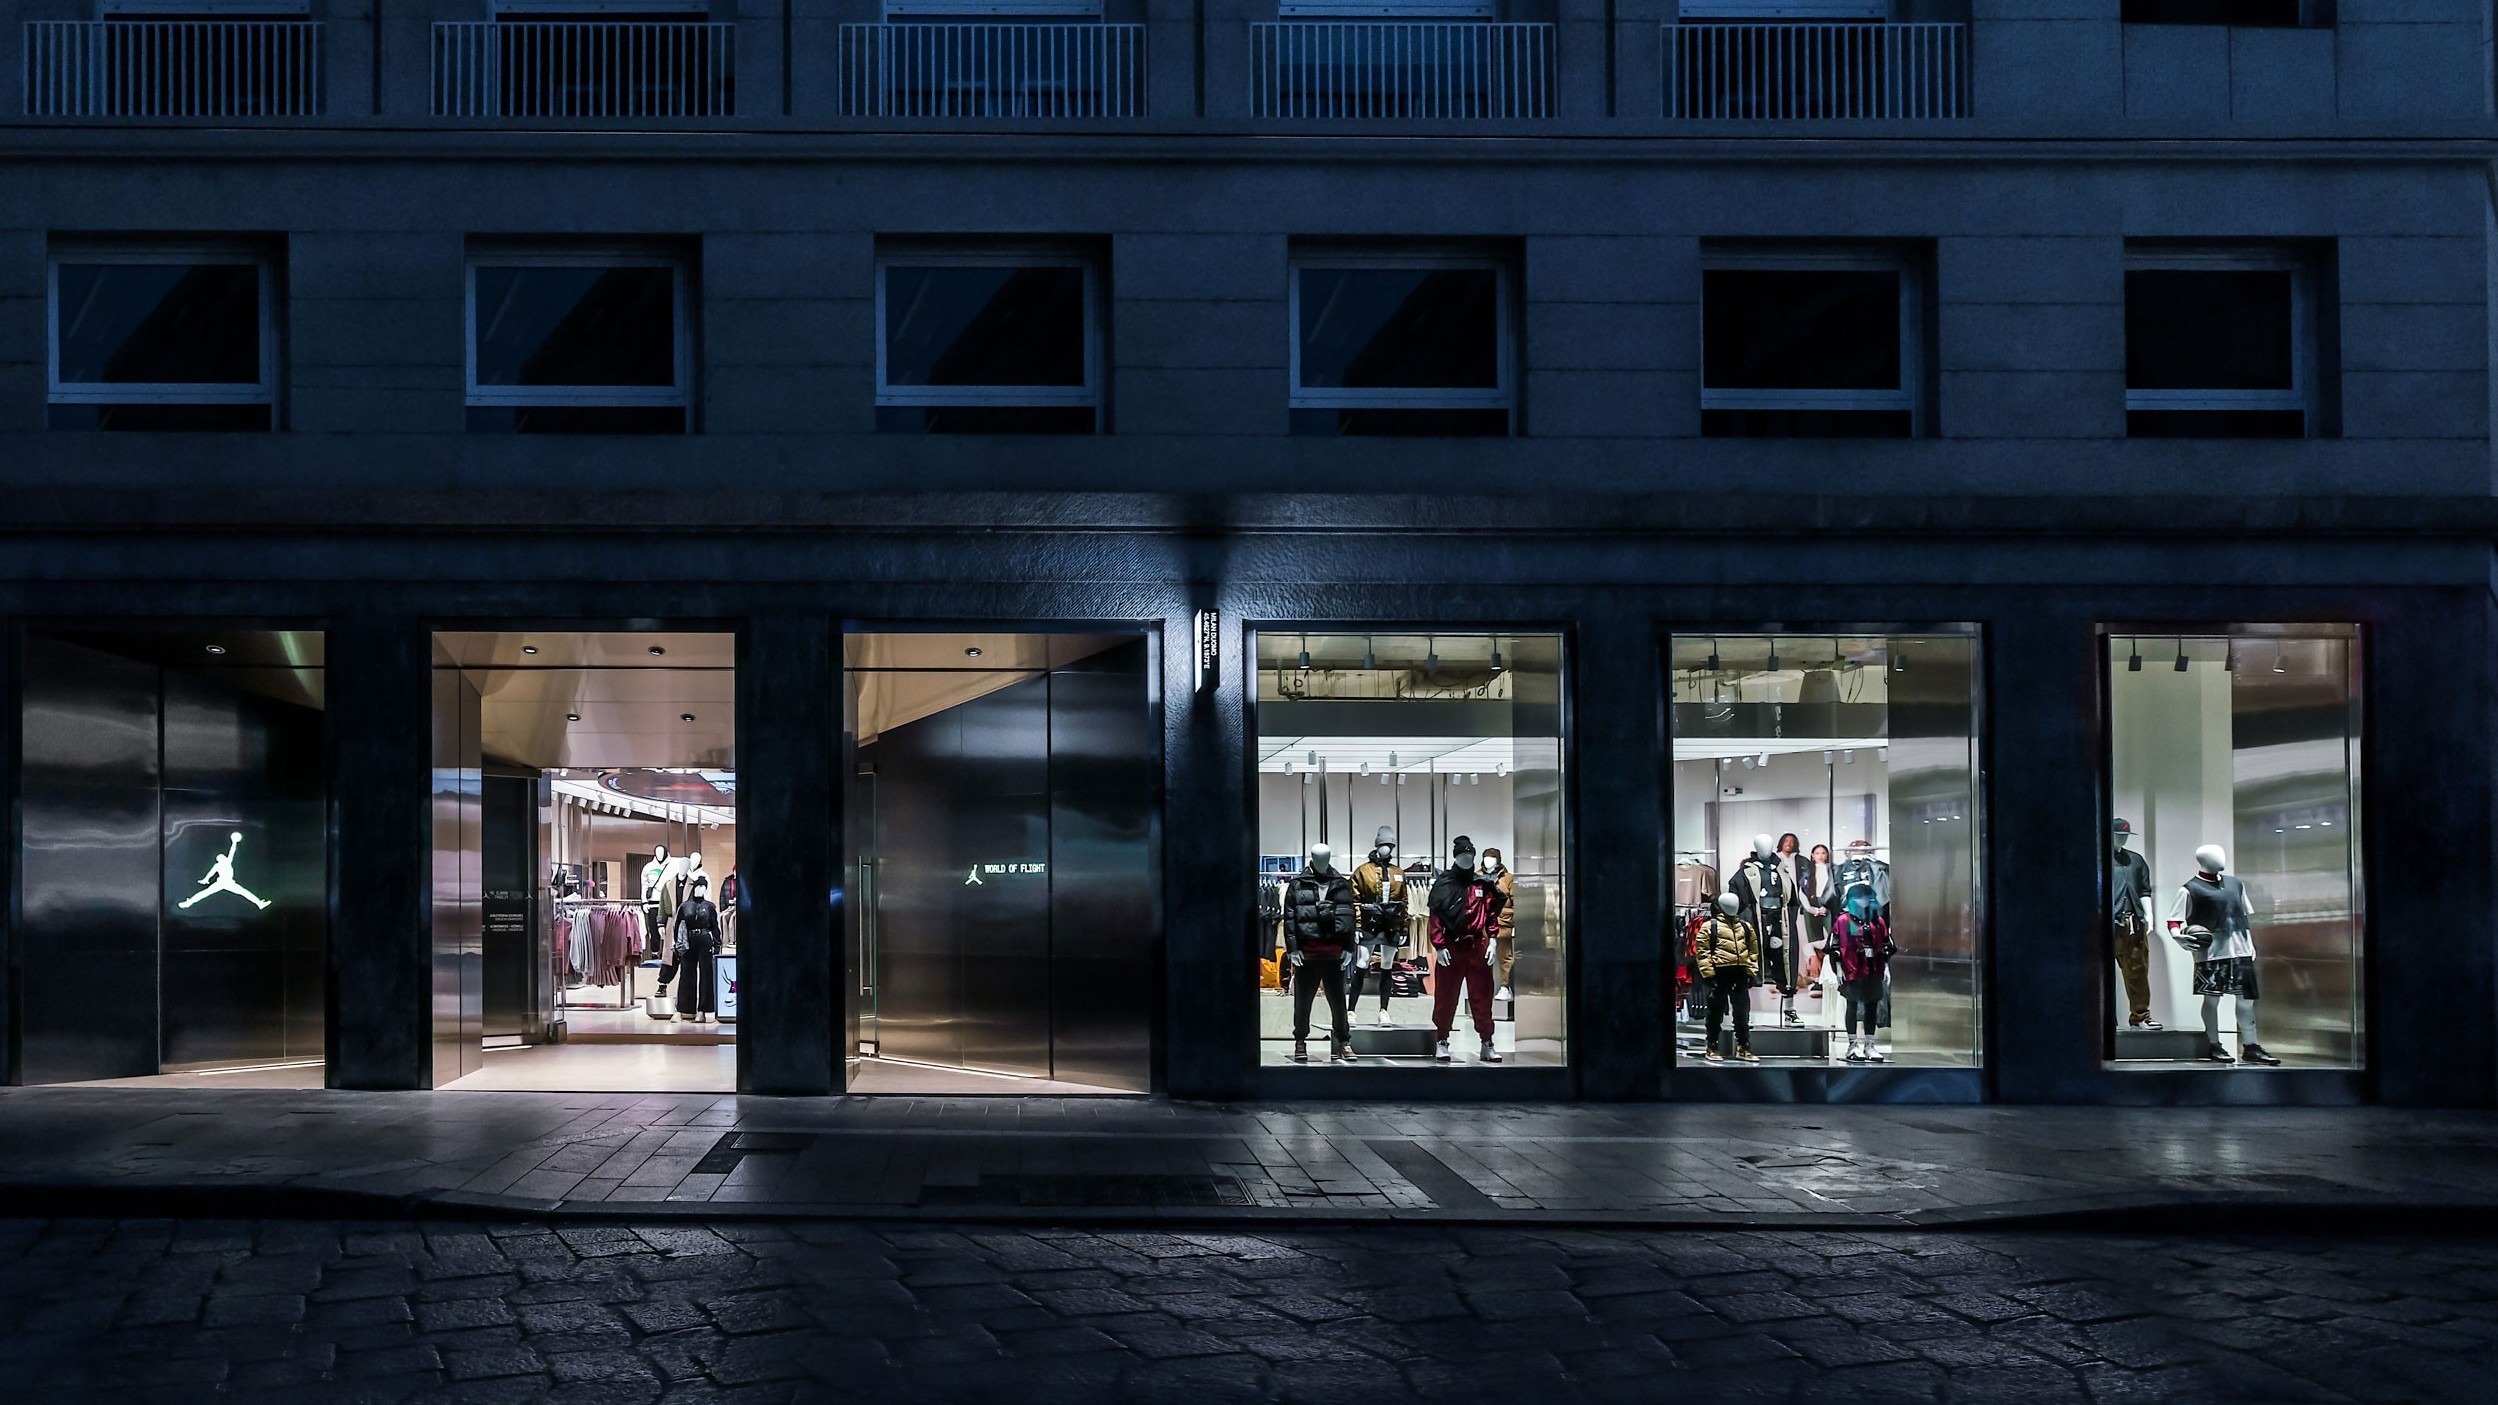 Louis Vuitton Torino store, Italy